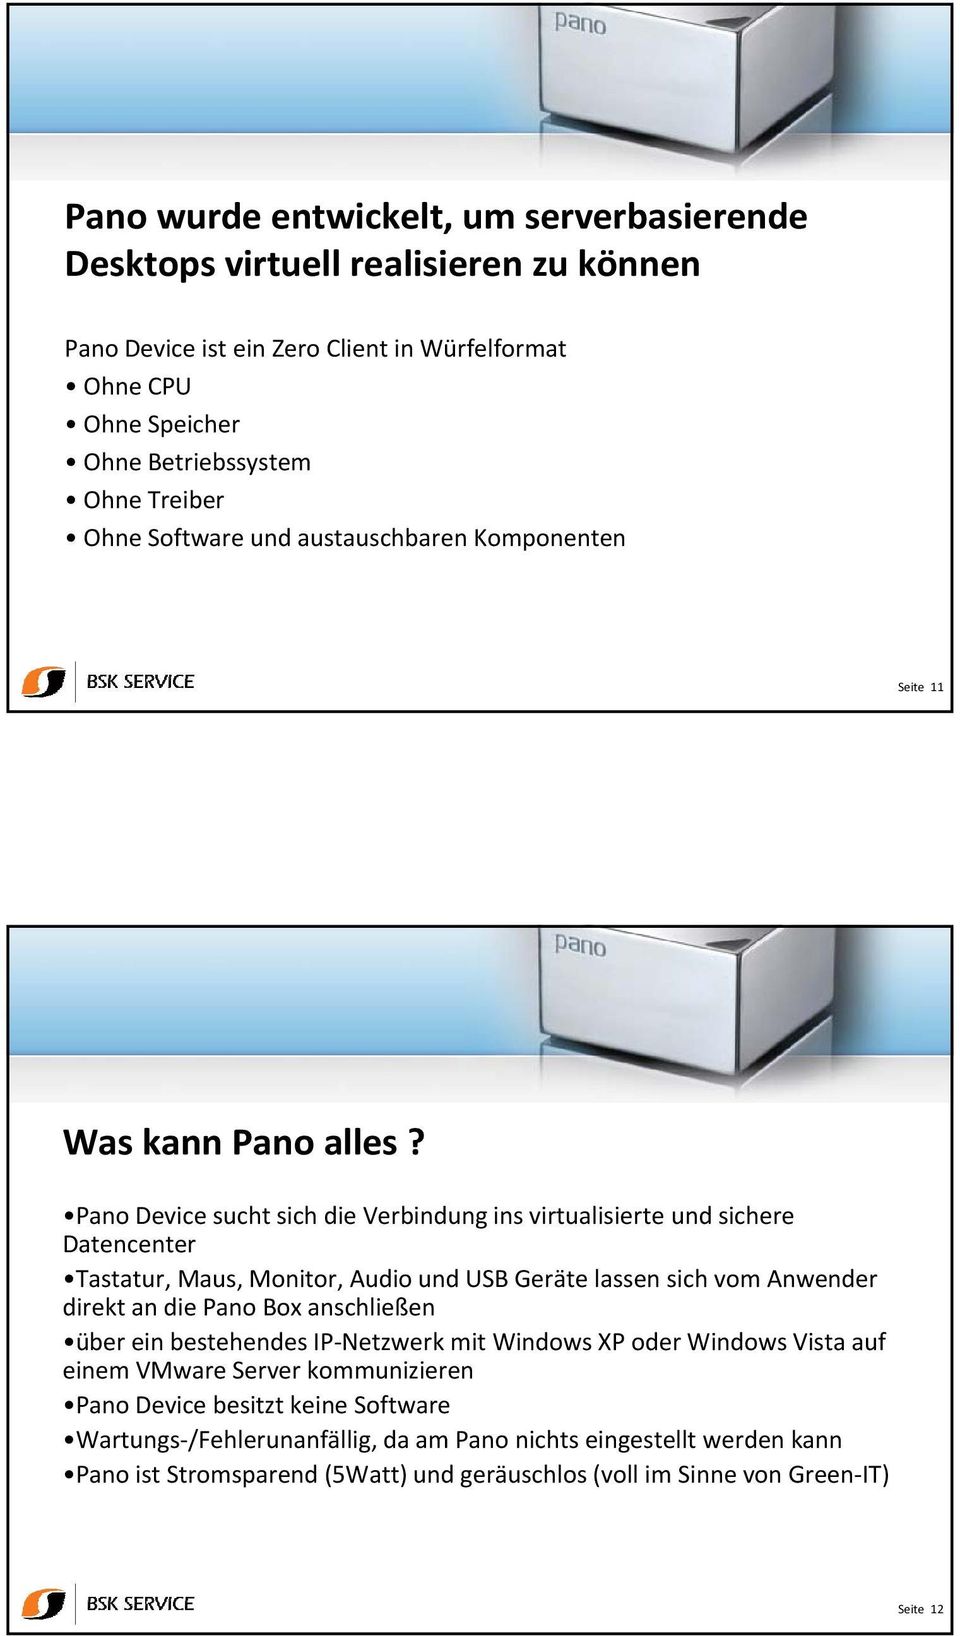 Pano Device sucht sich die Verbindung ins virtualisierte und sichere Datencenter Tastatur, Maus, Monitor, Audio und USB Geräte lassen sich vom Anwender direkt an die Pano Box